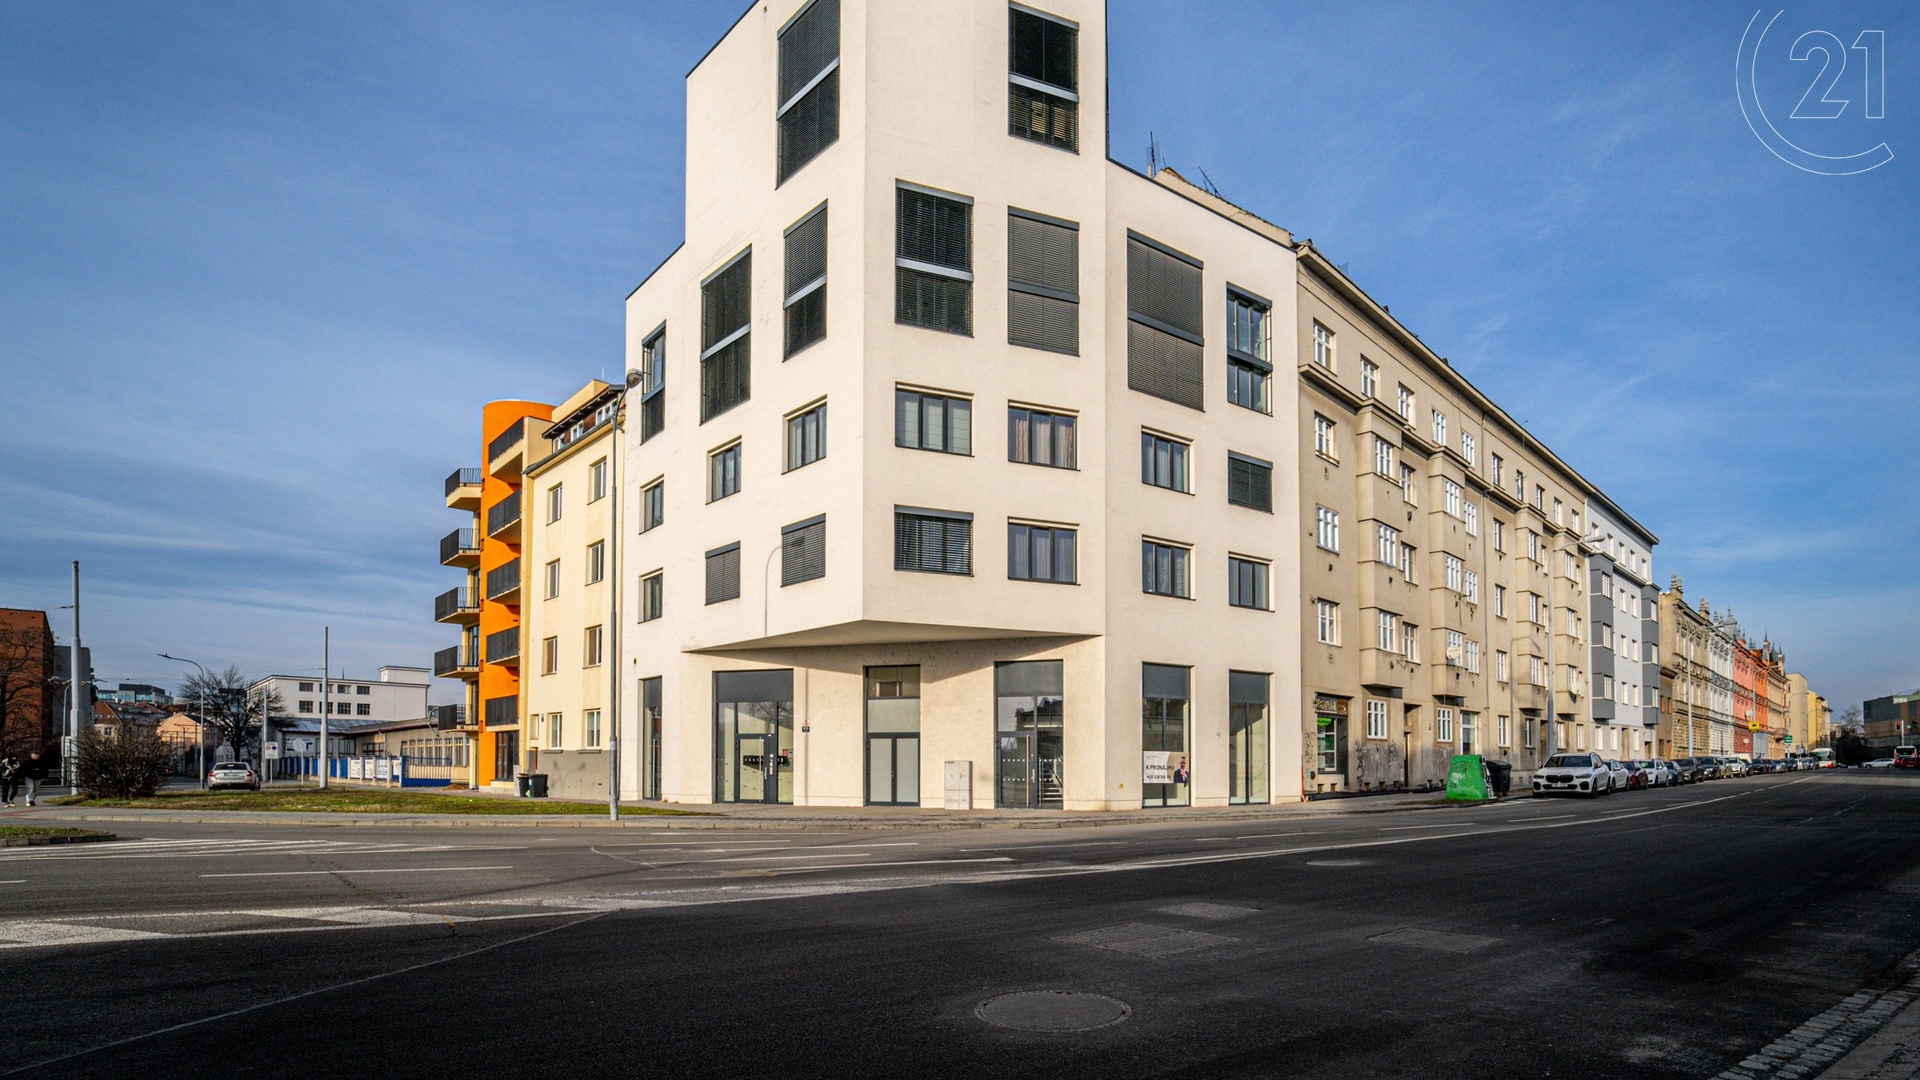 Obchodní prostory ke koupi o celkové ploše 232m2 v rohovém domě u frekventované ulice Mlýnská v Brně